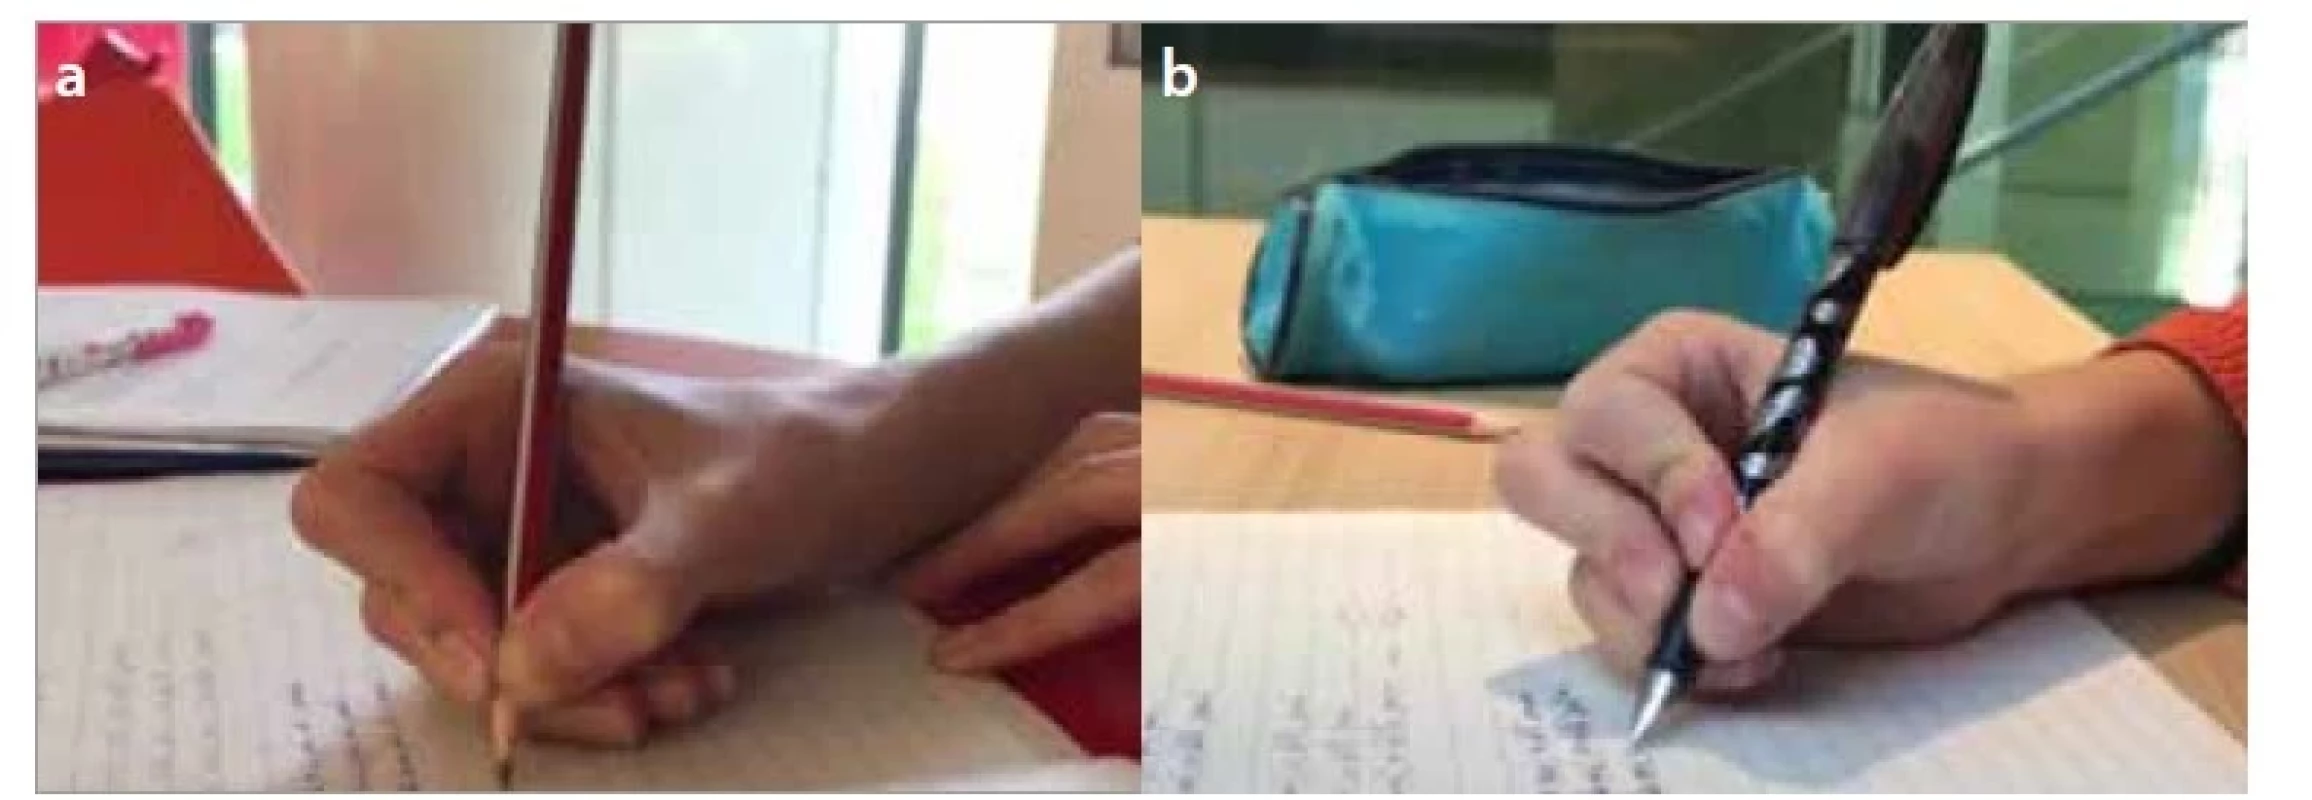 a,b. Modifikovaný špetkový úchop – přitažená špetka – a) vedená třemi
prsty (tříprstá přitažená špetka), b) vedená čtyřmi prsty (čtyřprstá přitažená
špetka).<br>
Fig. 2a,b. Modified pencil grip – a) modified dynamic tripod, b) modified dynamic
quadruped grip.